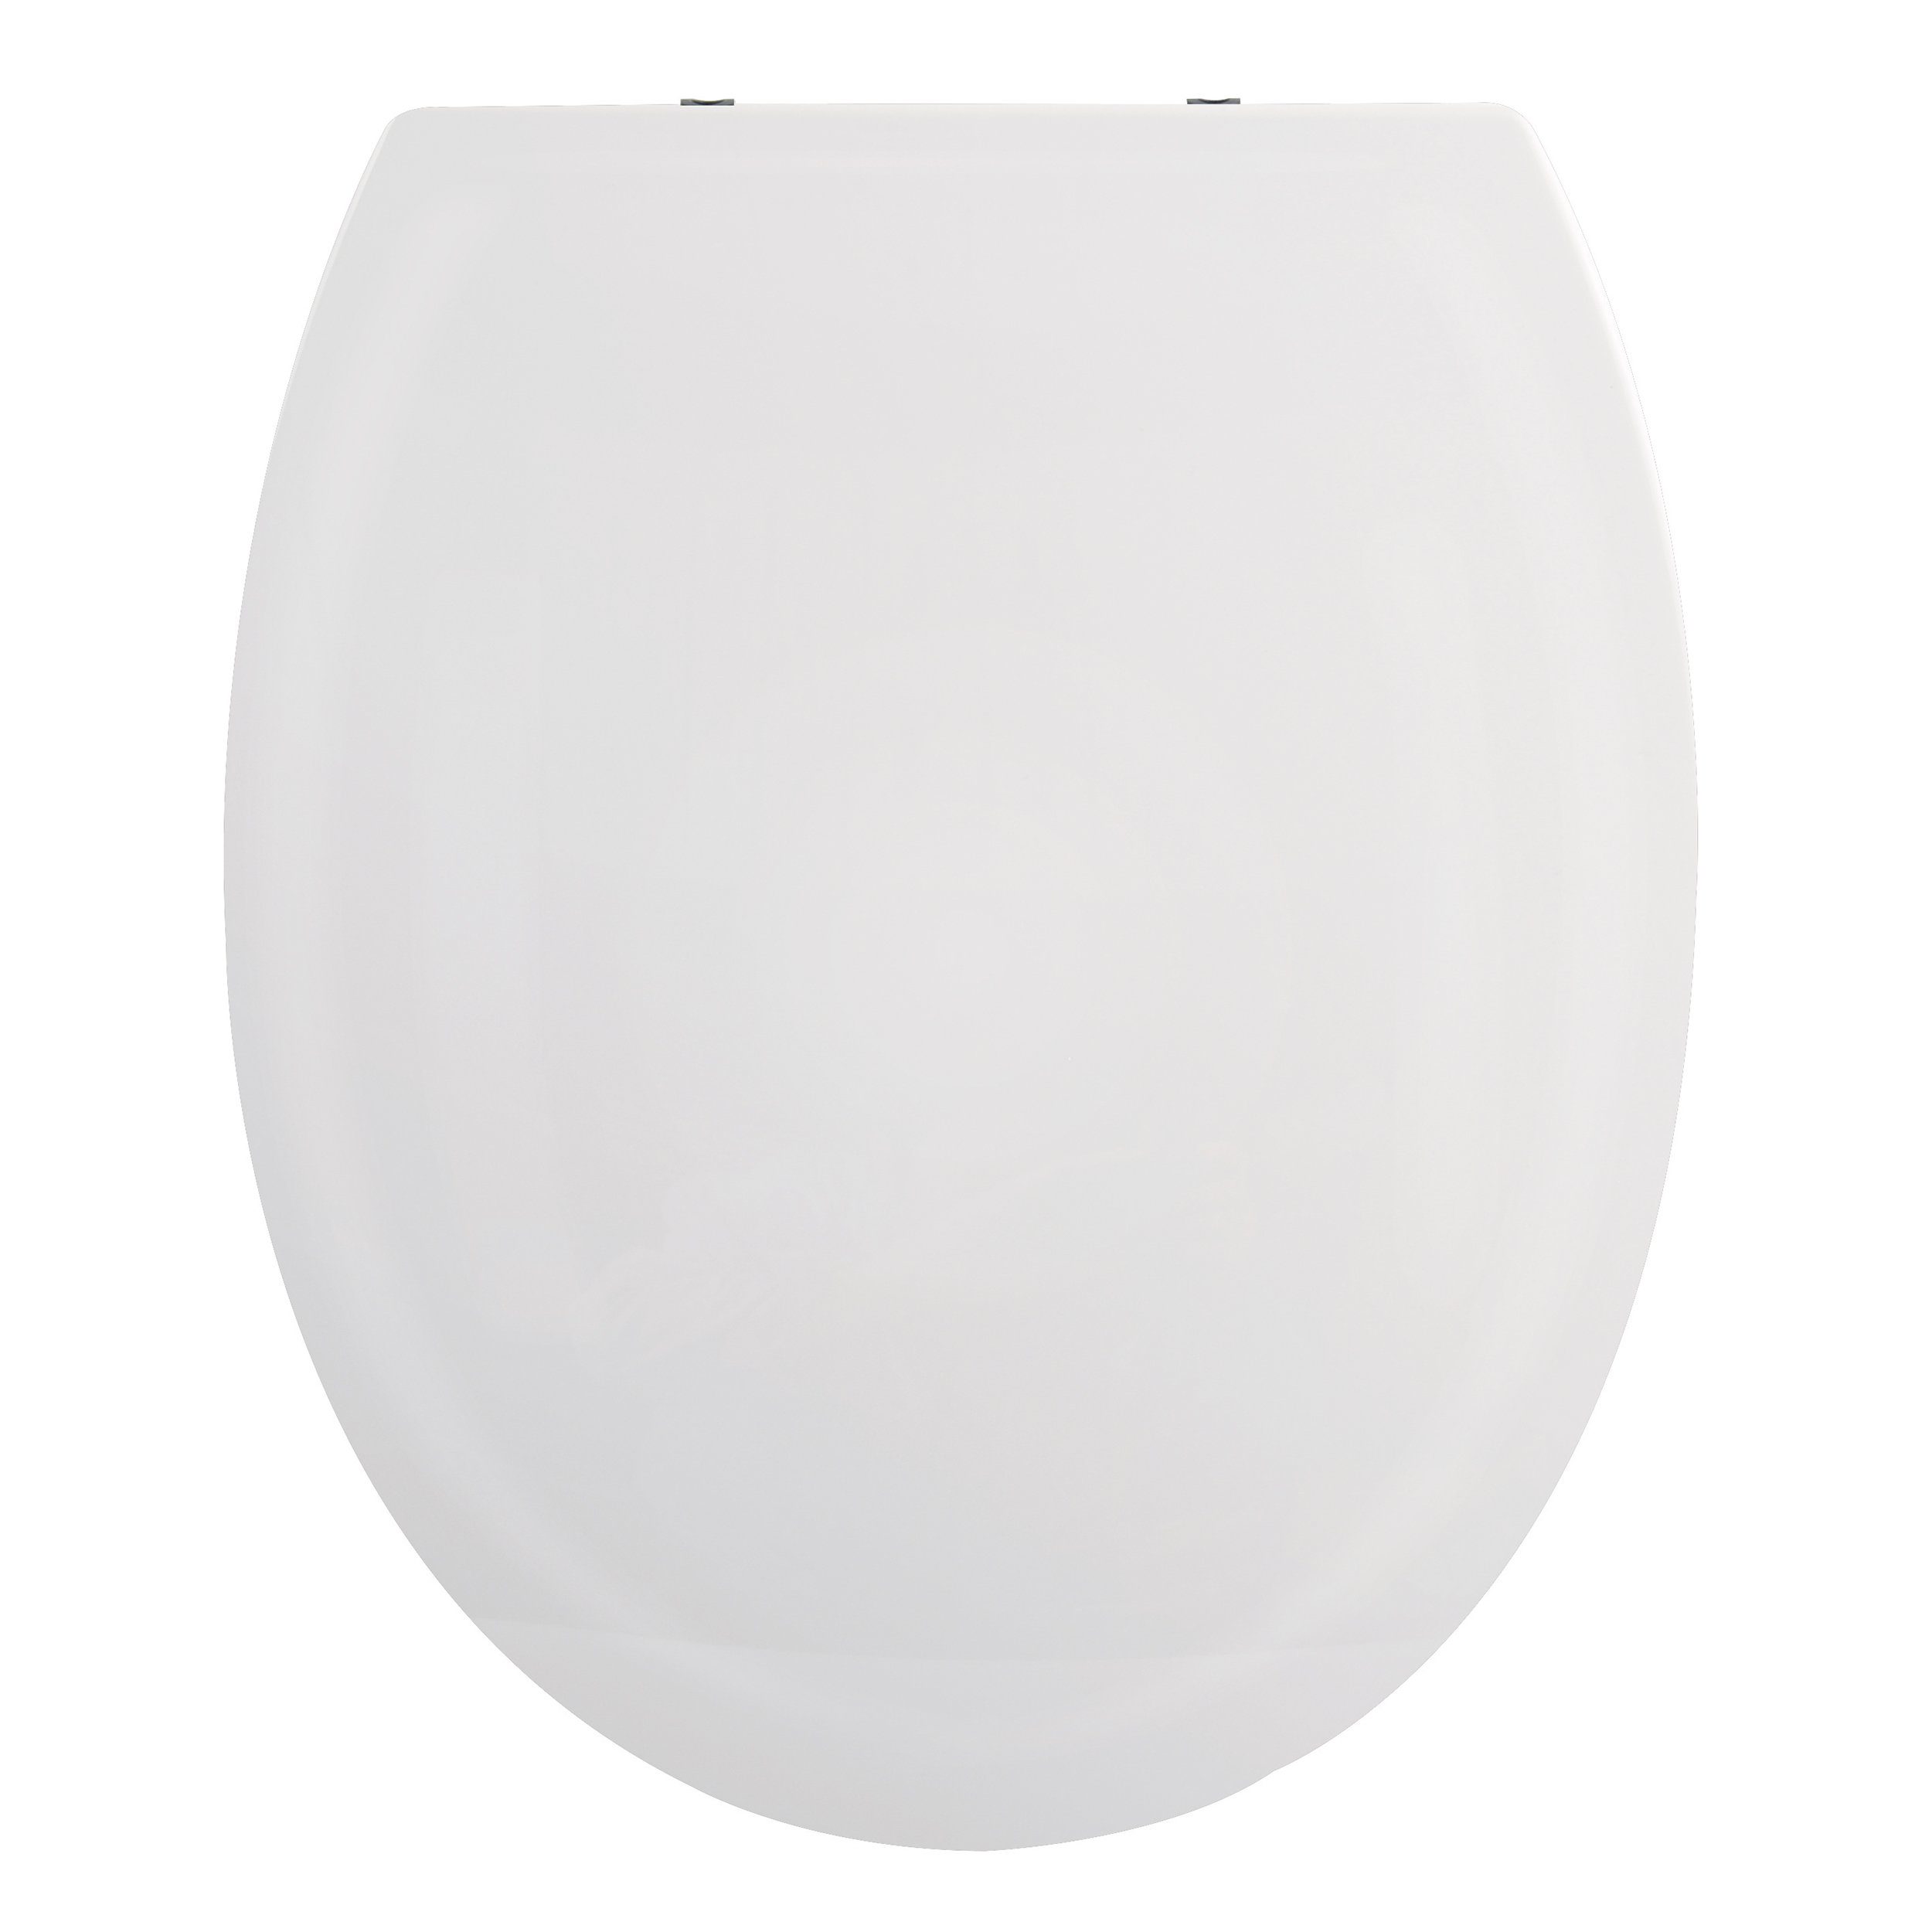 spirella WC-Sitz HARRY, Premium Toilettendeckel aus leichtem PP Thermoplast Kunststoff, hohe Stabilität, bruchsicher, Edelstahl Scharniere mit Quick-Release-Funktion zur einfachen Schnellreinigung, Soft Close Absenkautomatik, oval, weiß